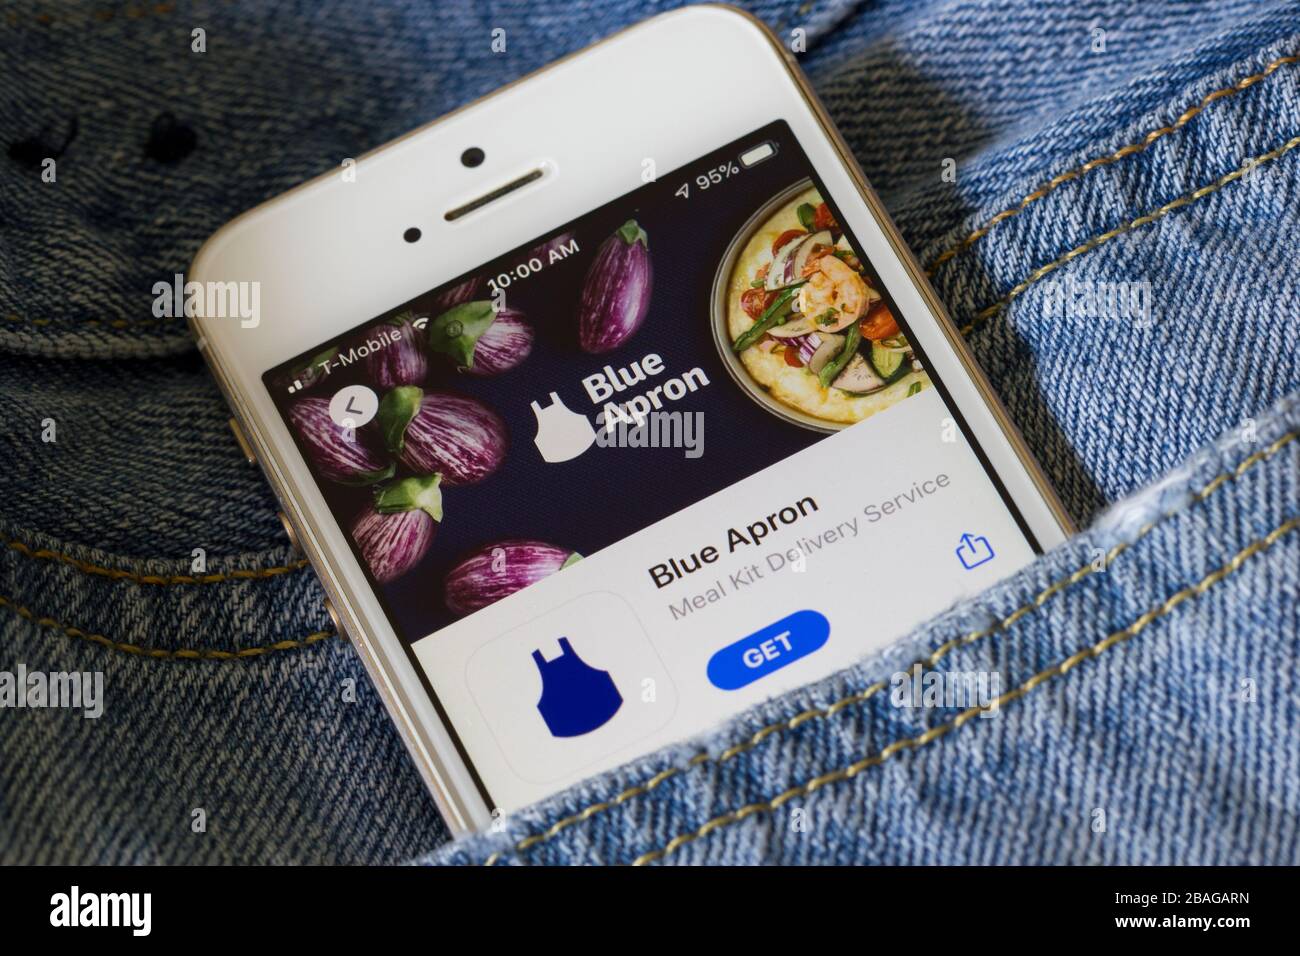 L'icône de l'application mobile de Blue Apron, société de services de livraison d'épicerie, apparaît sur un téléphone. La société livre une recette et les ingrédients nécessaires aux clients. Banque D'Images